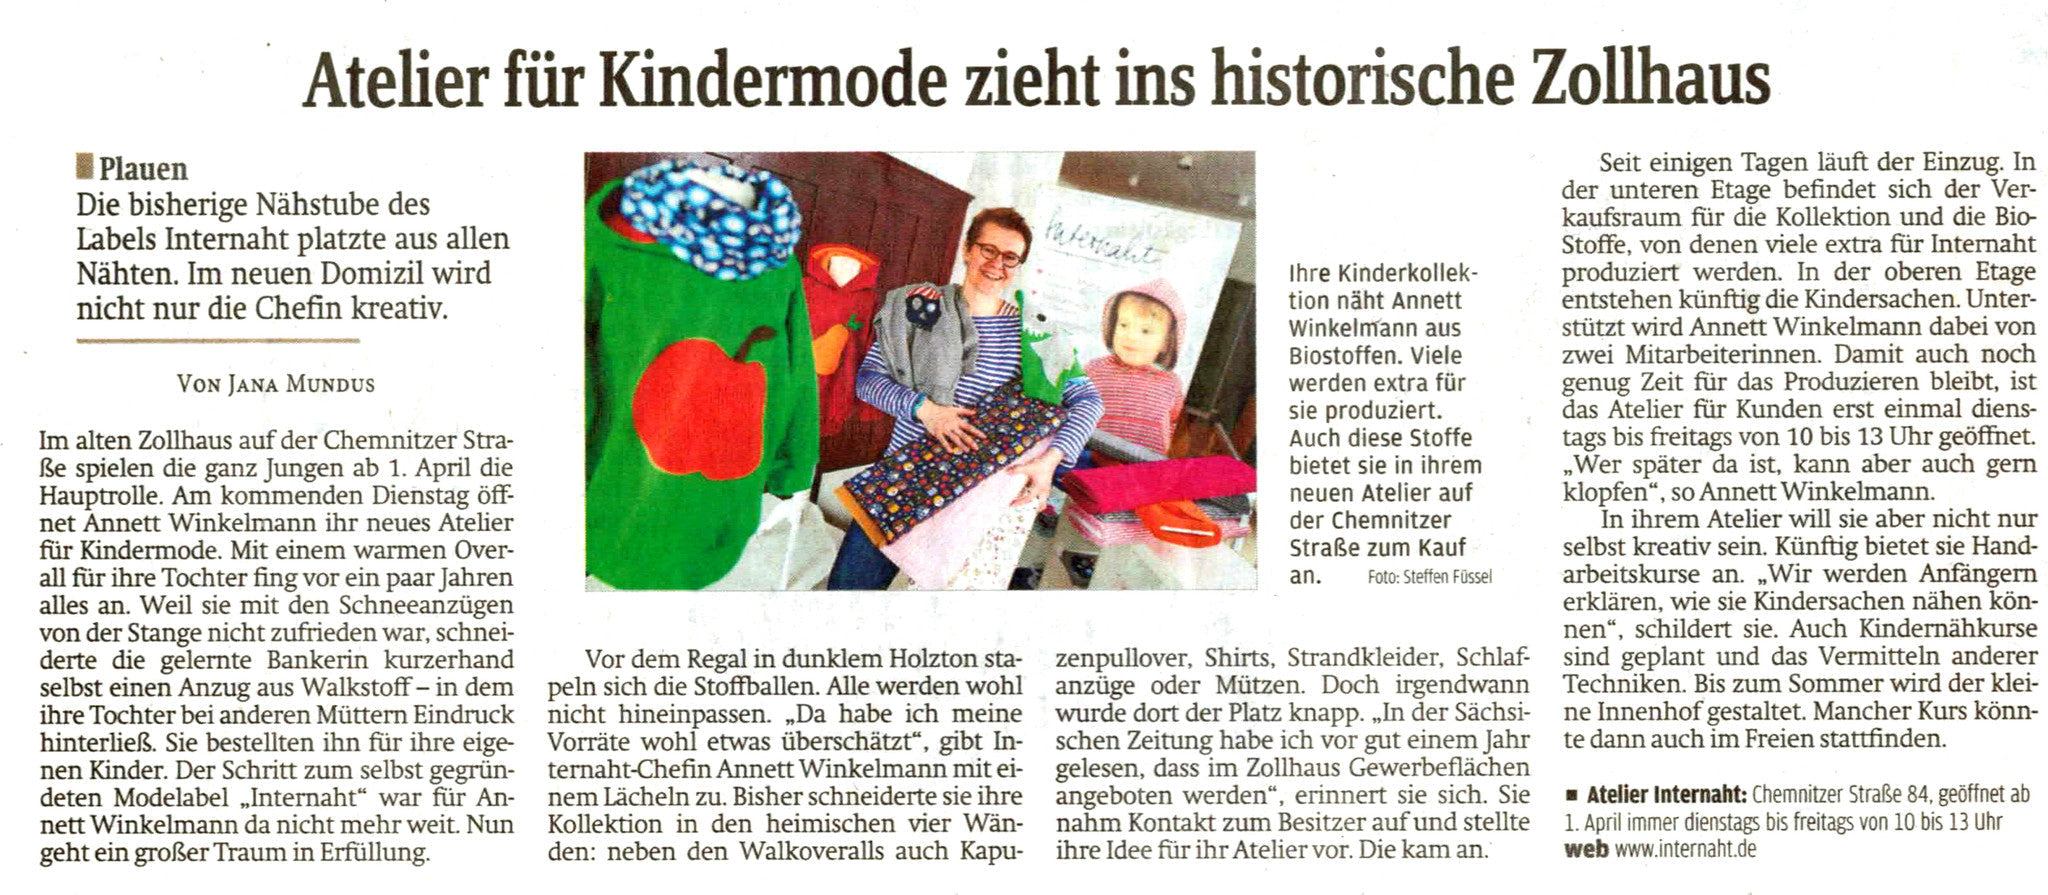 März 2014 - Die internaht-Atelier-Eröffnung in der Sächsischen Zeitung